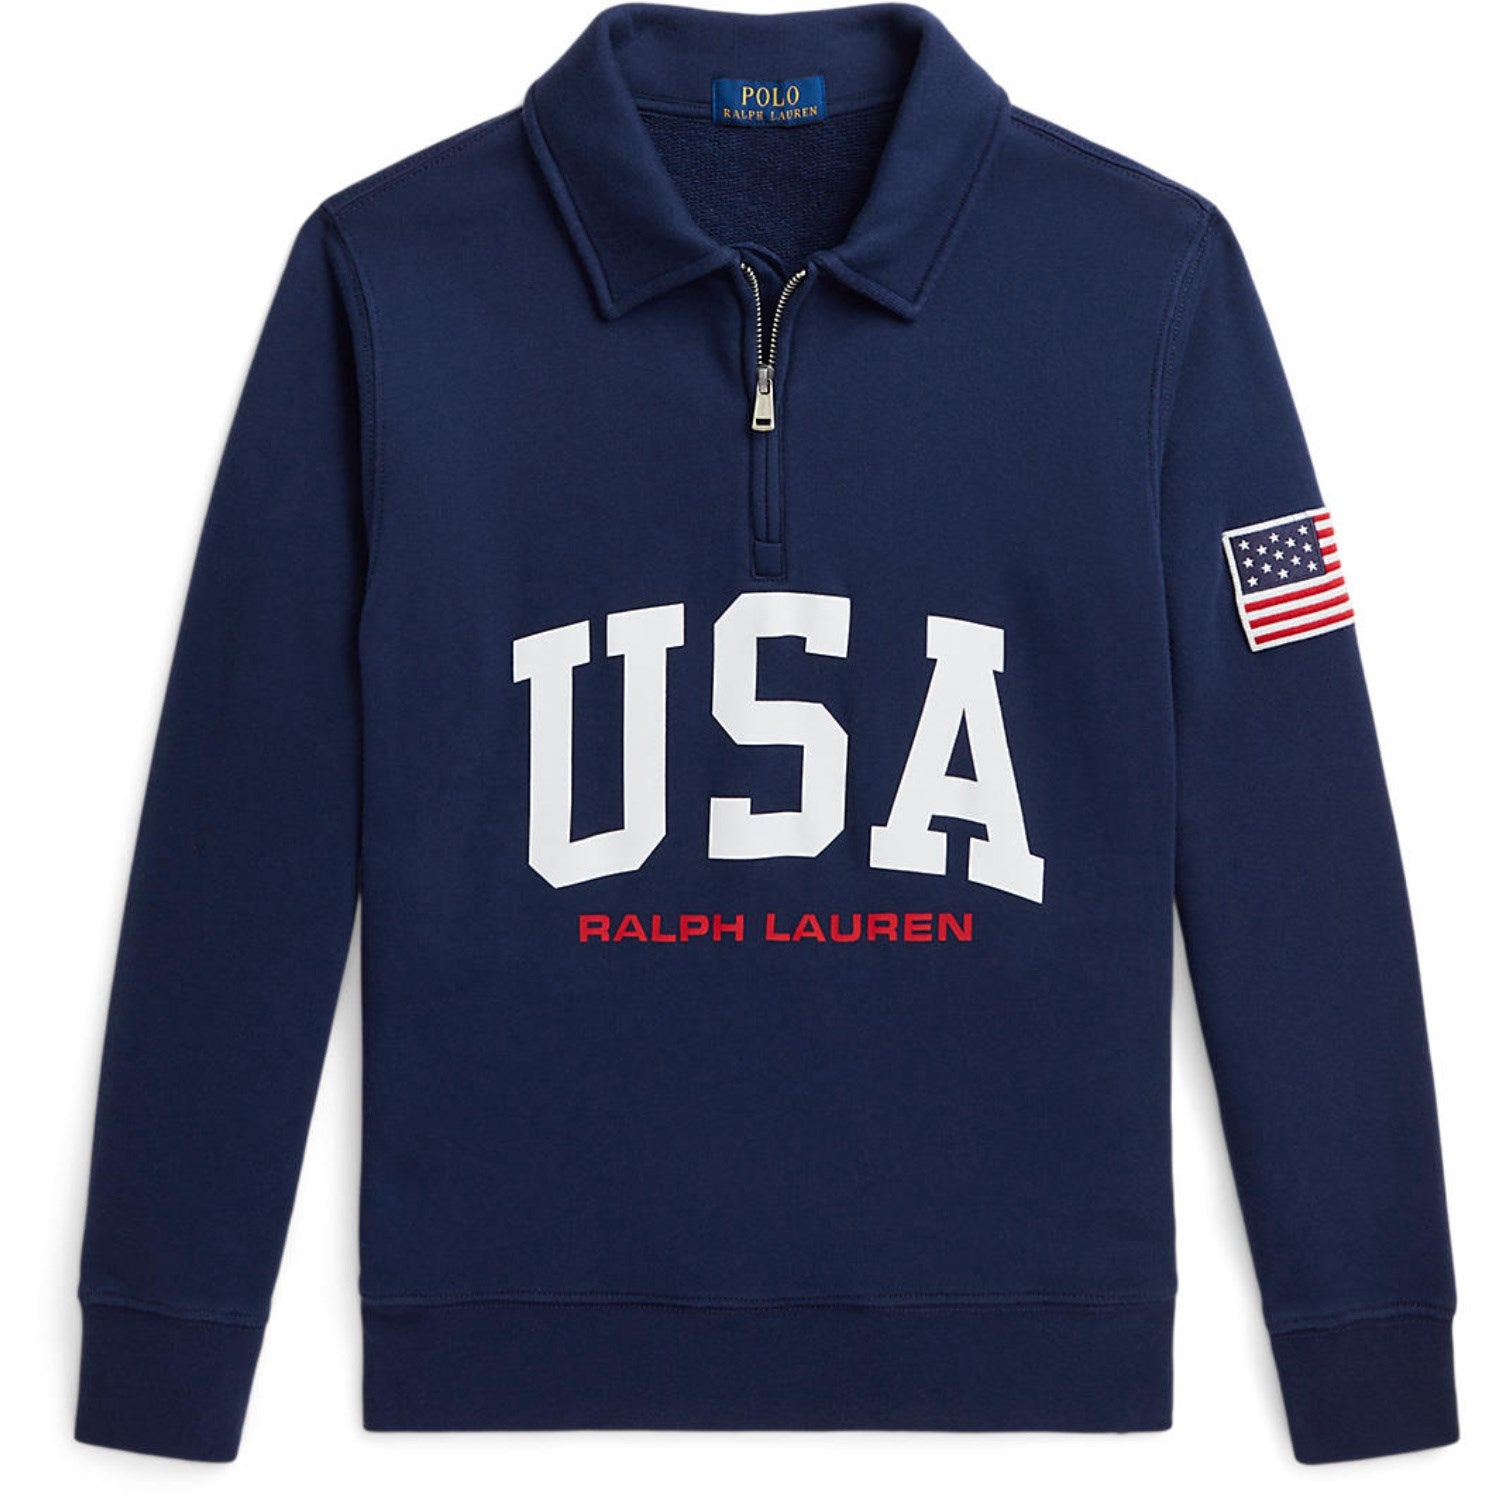 Polo Ralph Lauren Spring Navy Sweatshirt